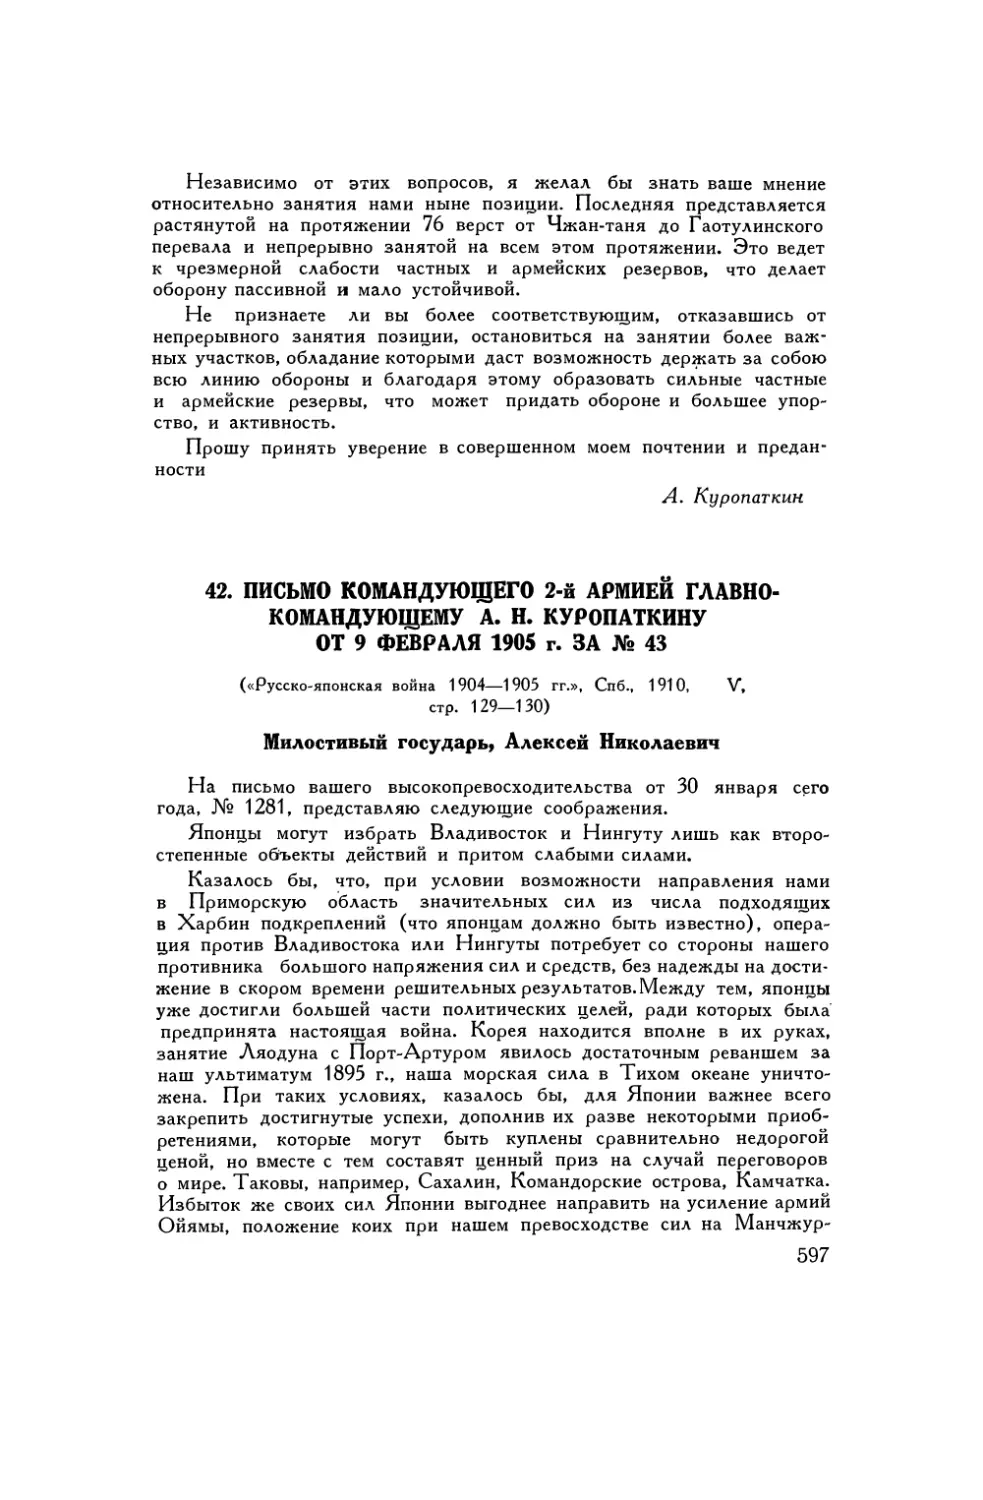 42. Письмо командующего 2-й армией главнокомандующему А. Н. Куропаткину от 9 февраля 1905 г. за № 43